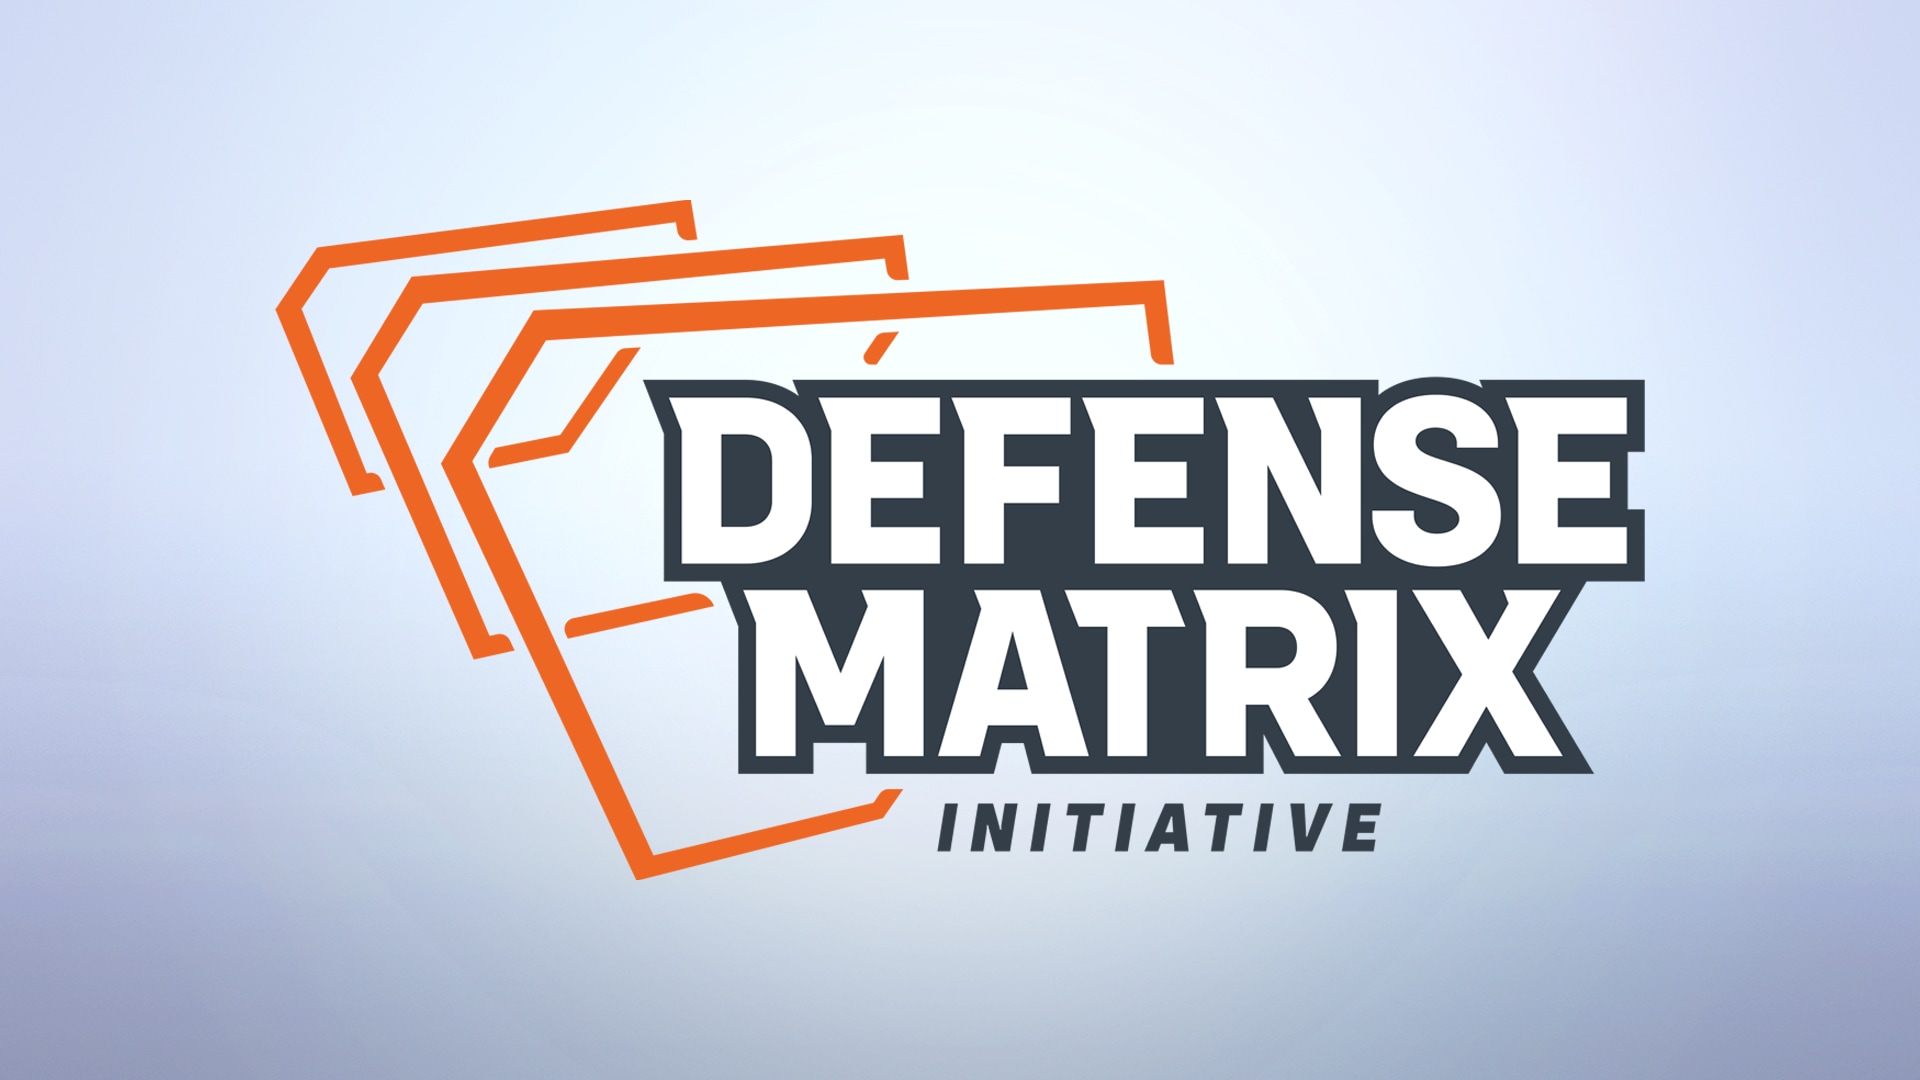 Aggiornamento Matrice Difensiva: protezione degli streamer e nuove misure contro l'uso di cheat